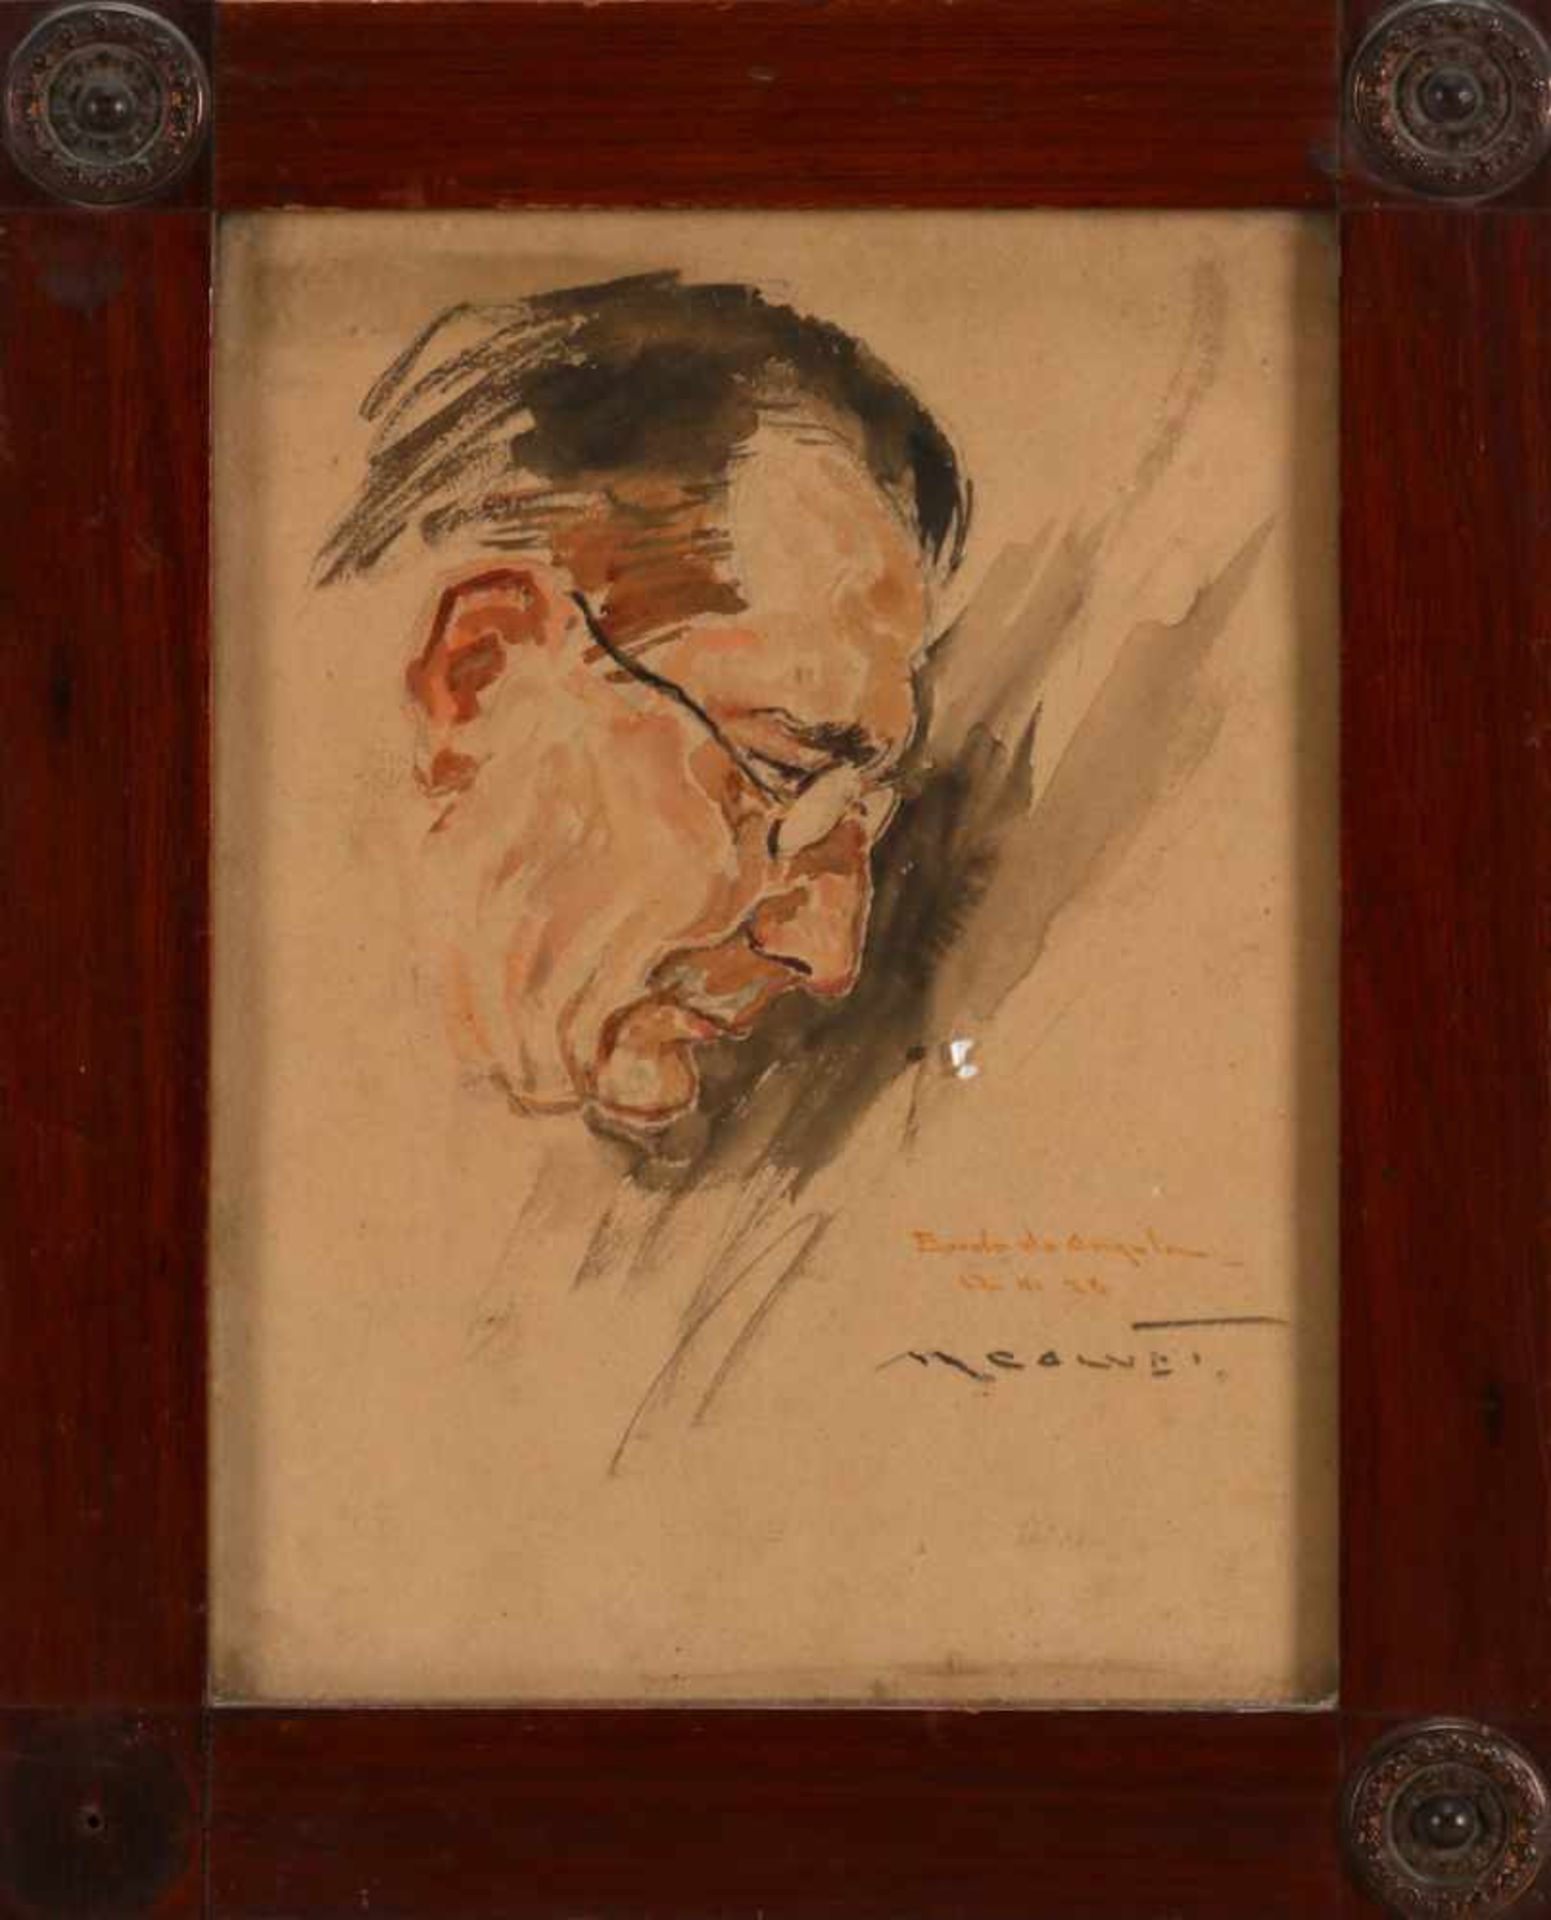 ANTÓNIO CARNEIRO (1872-1930), "BORDO DA ANGOLA"